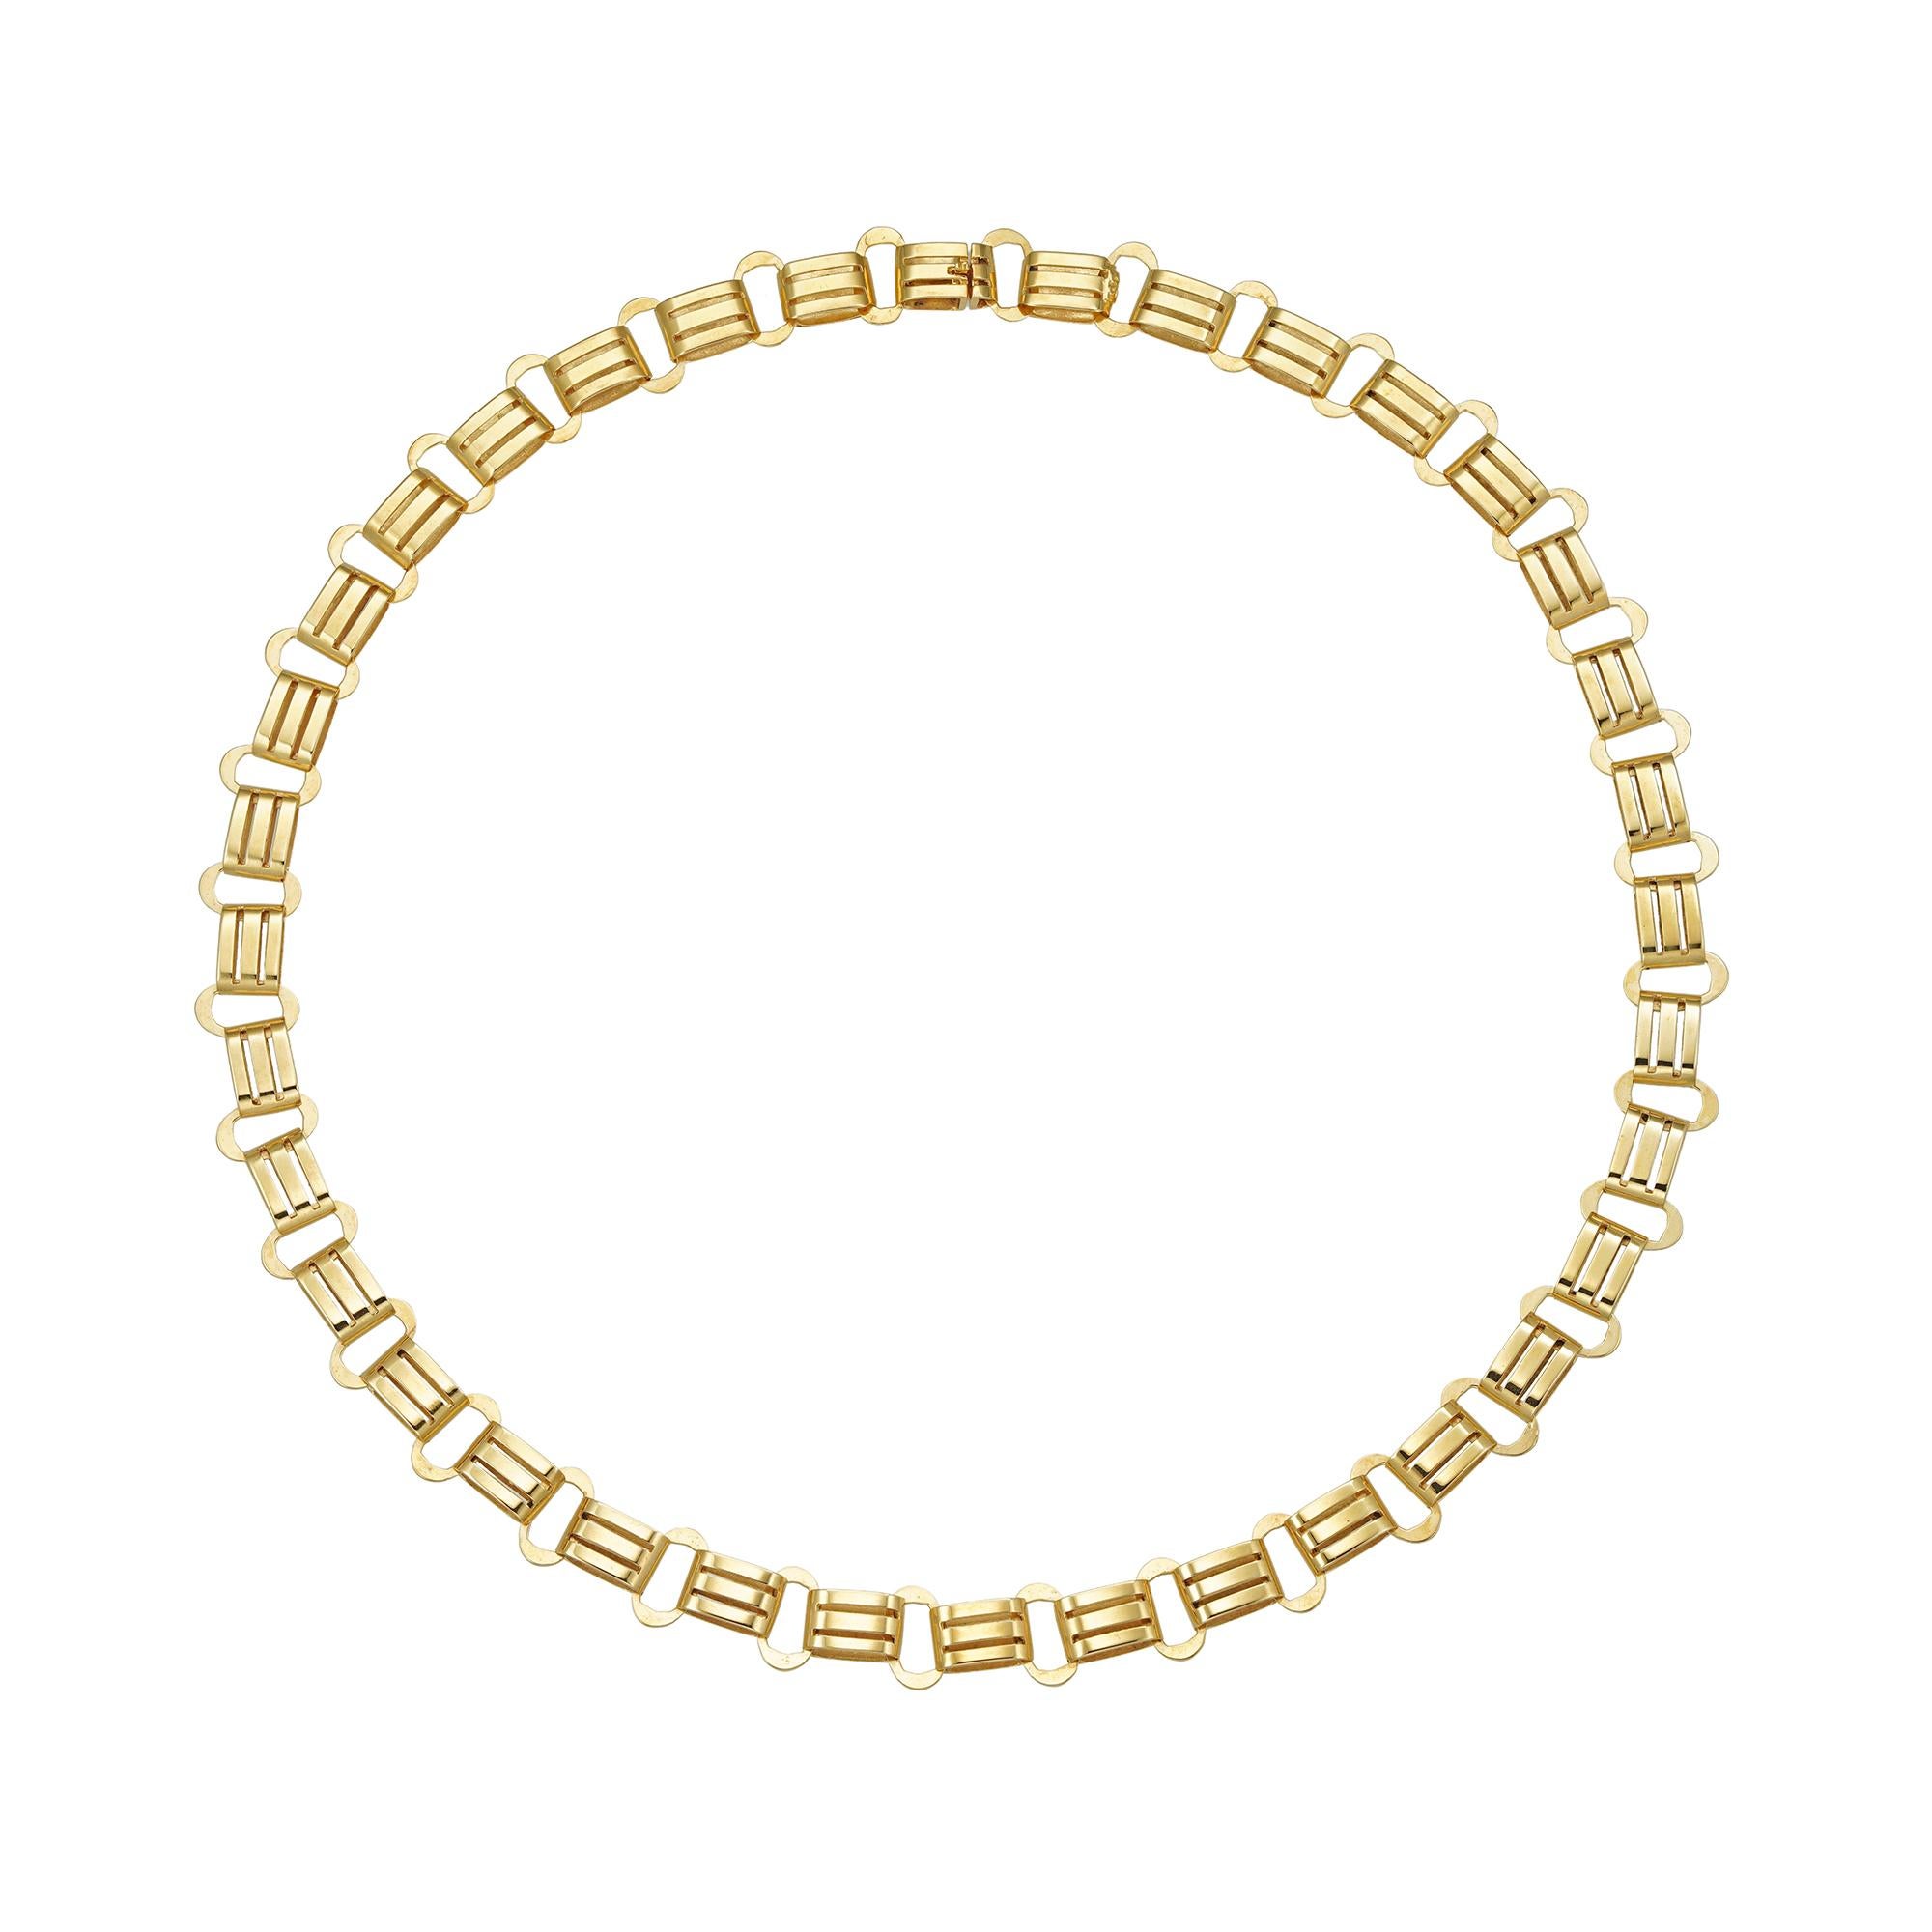 Collier en or de la fin de l'époque victorienne, composé de trente-six maillons de forme ovale, reliés à des maillons plus larges à double rangée percée, avec  fermoir caché, en or 9ct, vers 1890, mesurant environ 38,5 x 0,9cm, poids brut 15,1